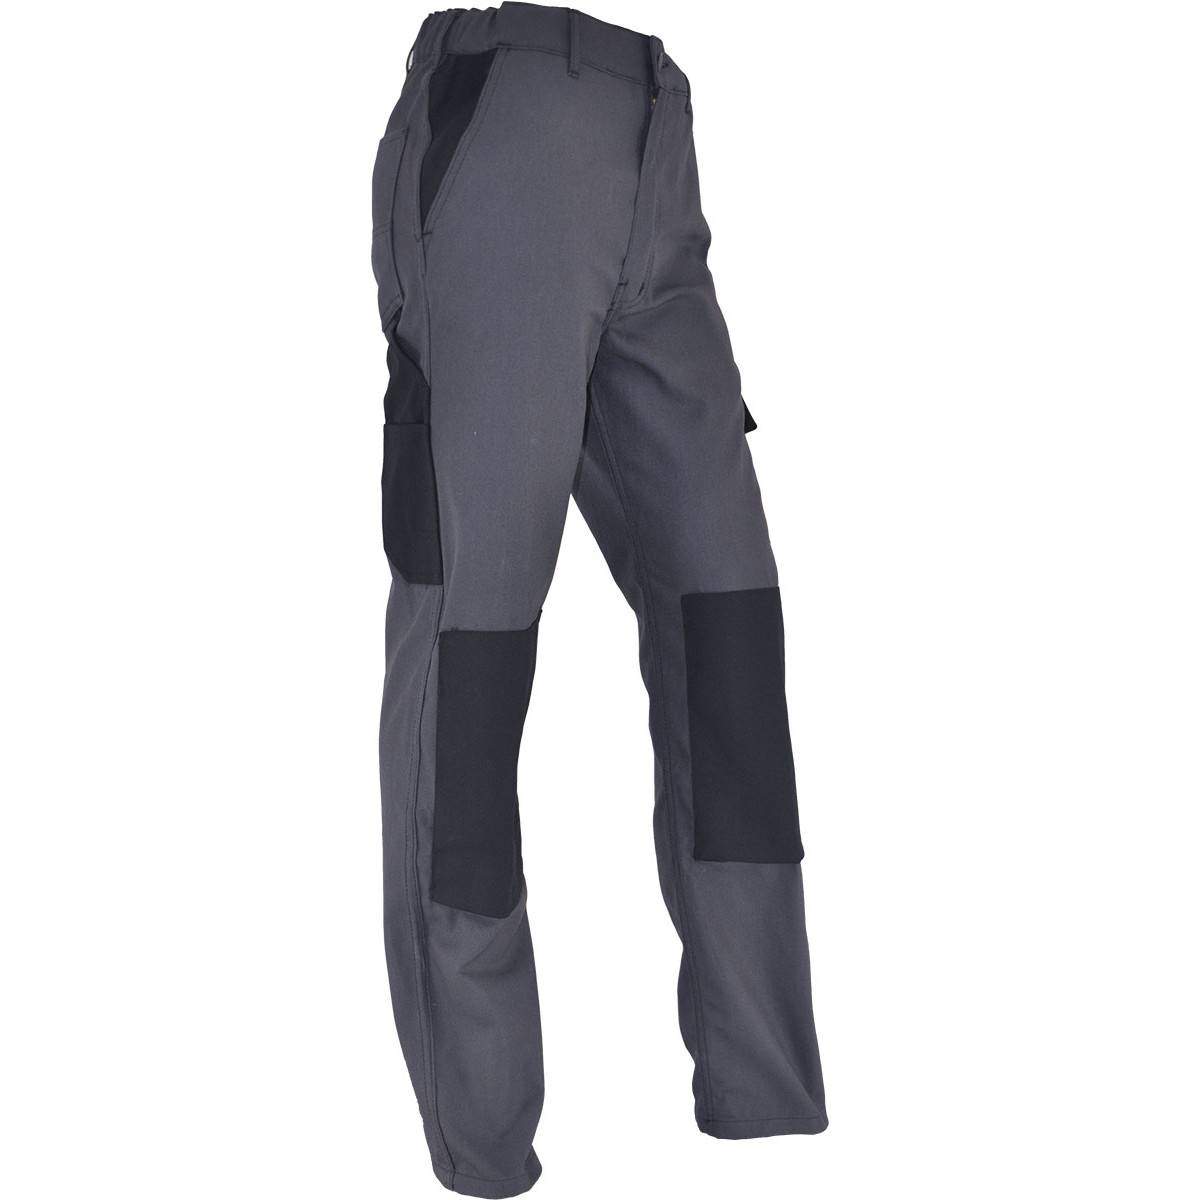 Pantalones de trabajo cómodos PMPC talla 46, gris antracita